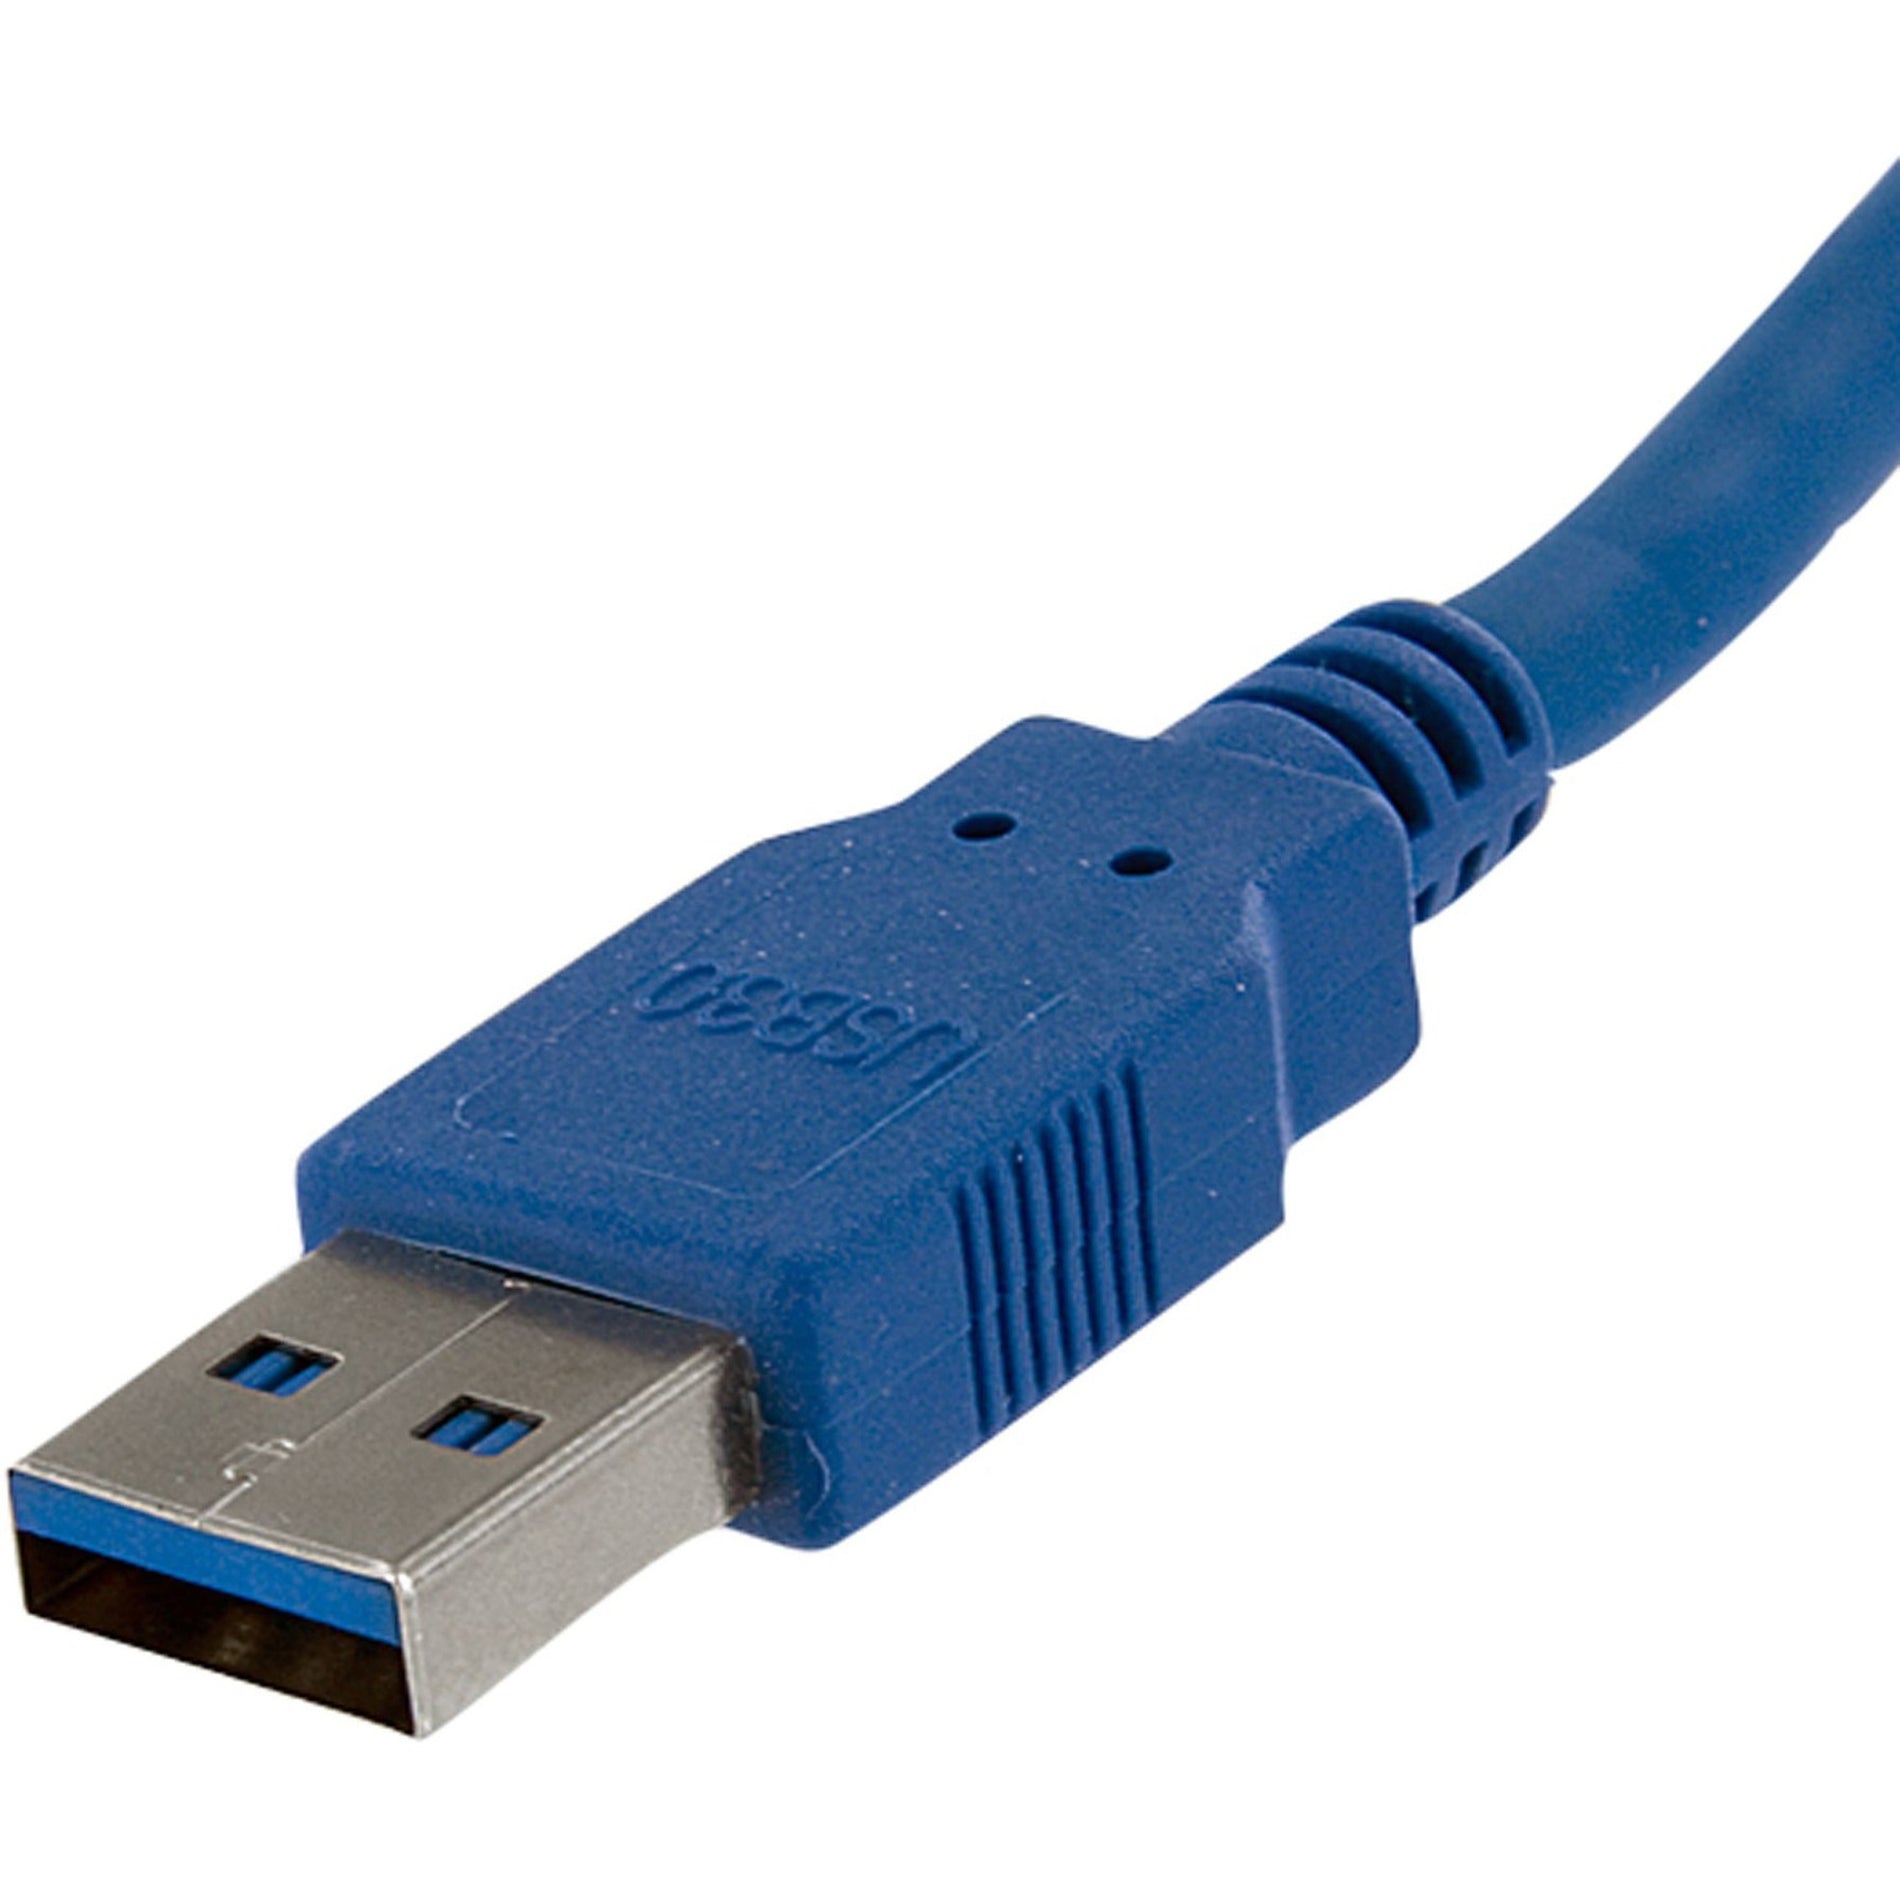 StarTech.com Cable SuperSpeed USB 3.0 6 pi A à A - M/M transfert de données à haute vitesse protection EMI